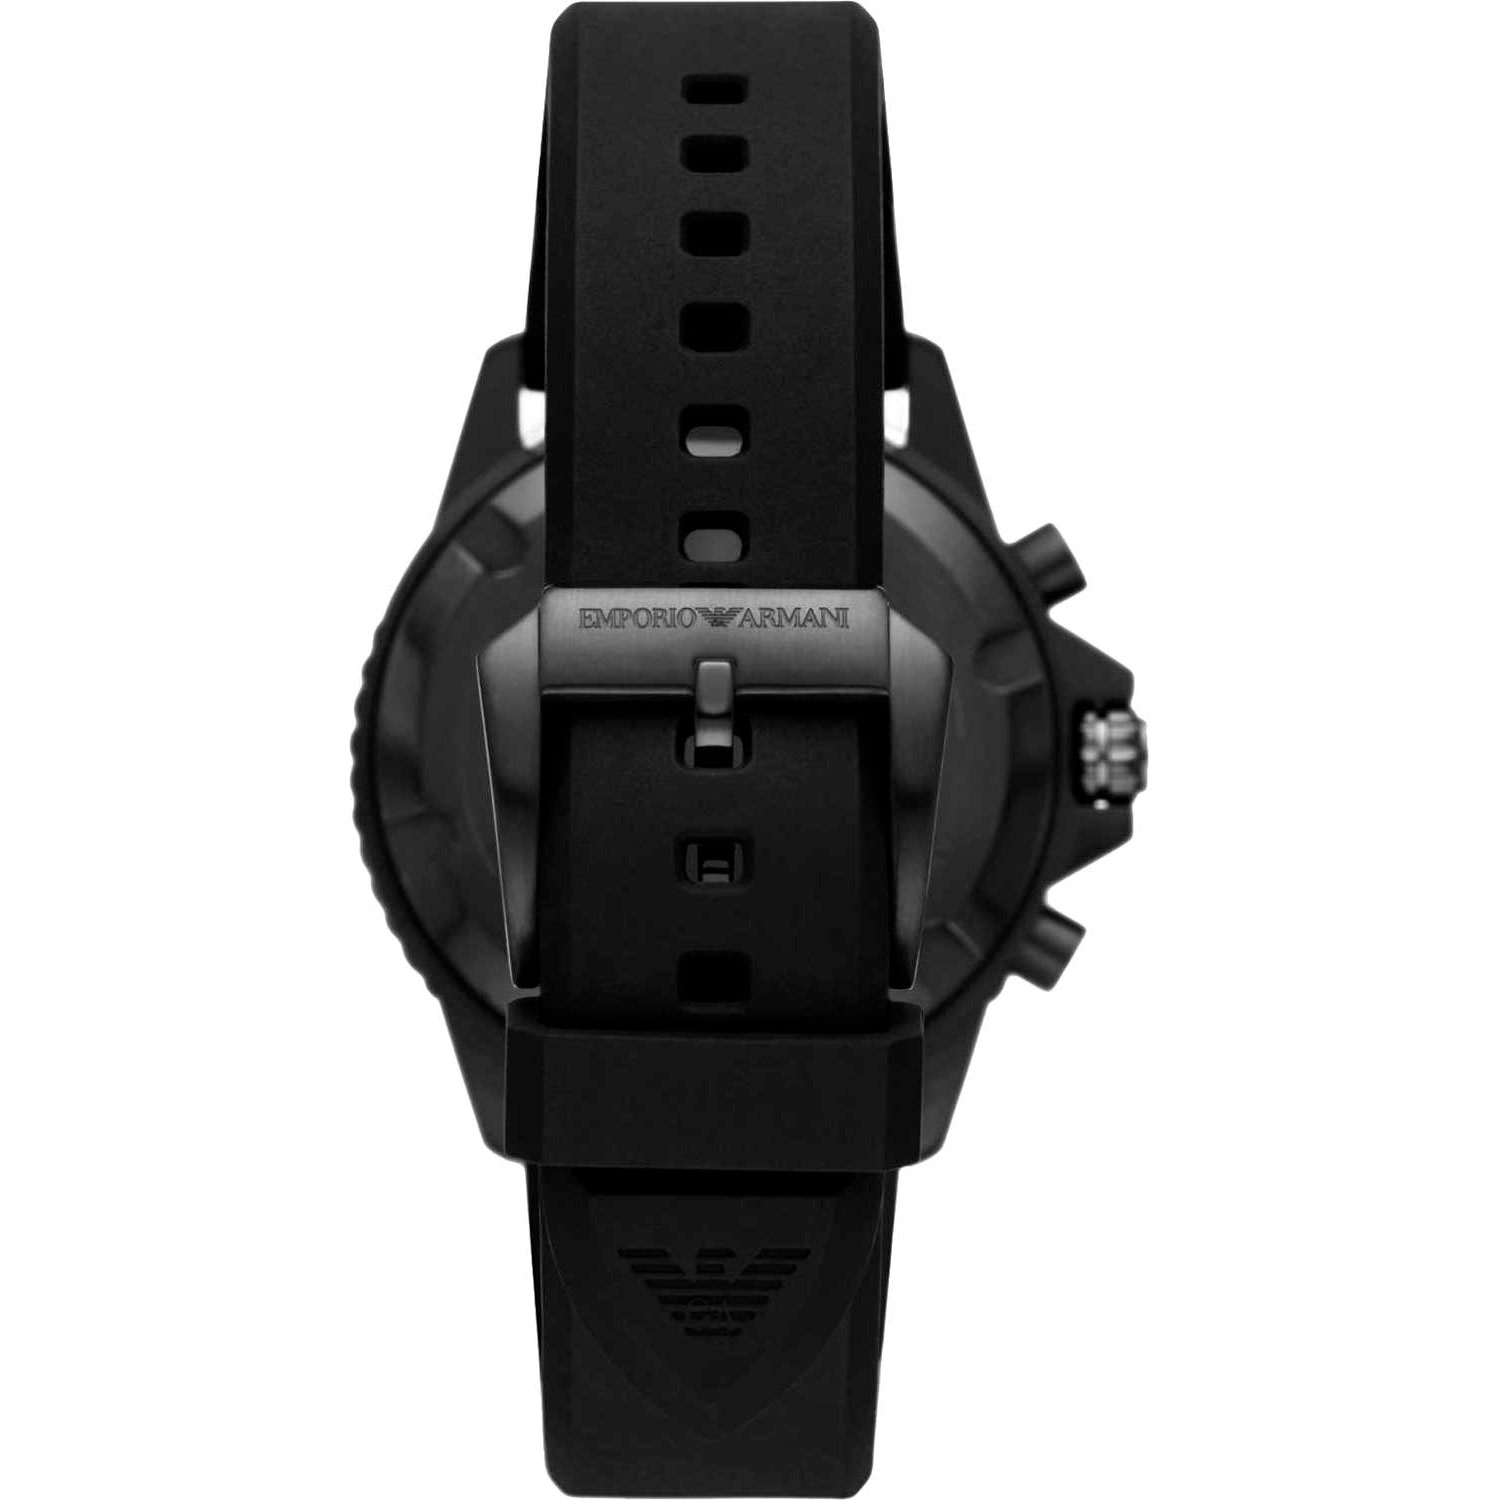 Часы Emporio armani AR11463 - купить мужские наручные часы в  интернет-магазине Bestwatch.ru. Цена, фото, характеристики. - с доставкой  по